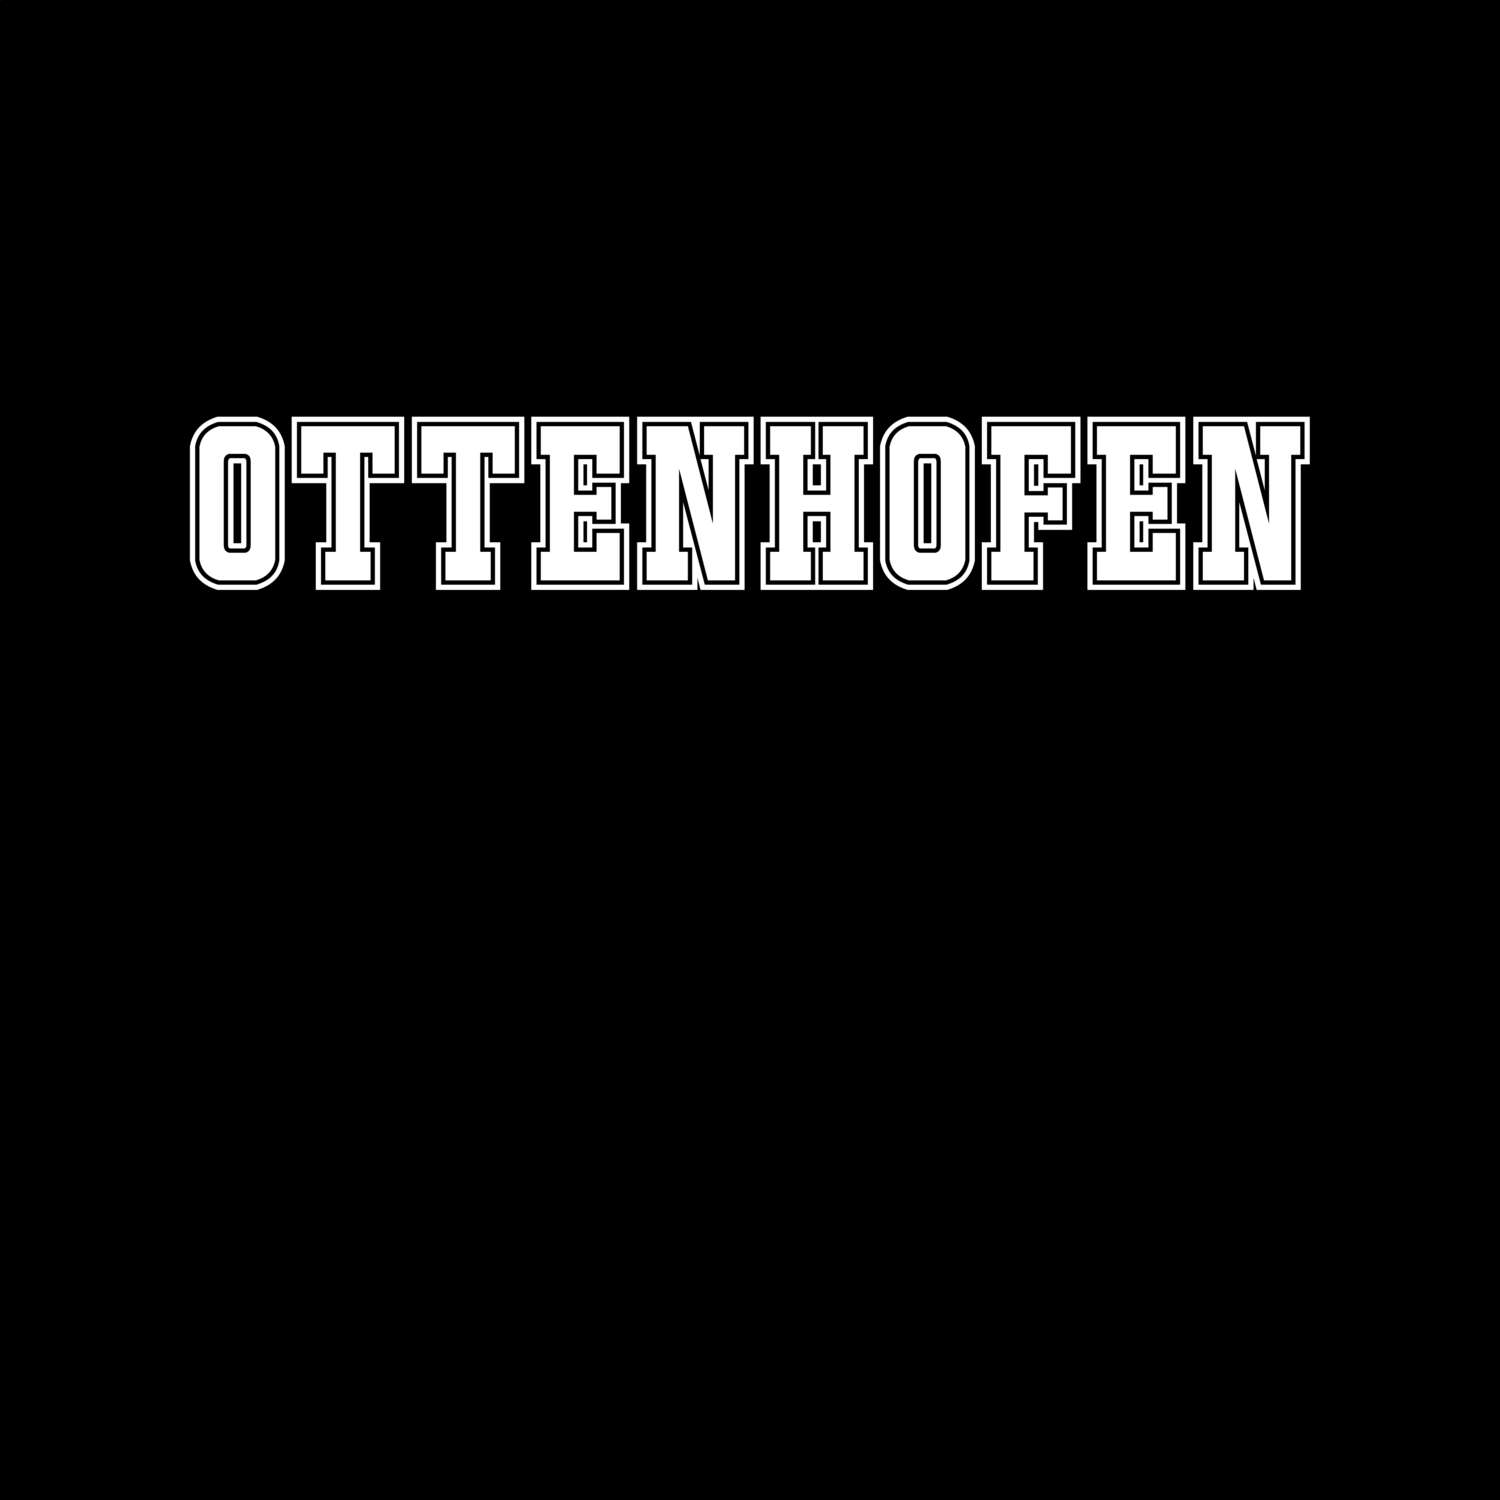 Ottenhofen T-Shirt »Classic«